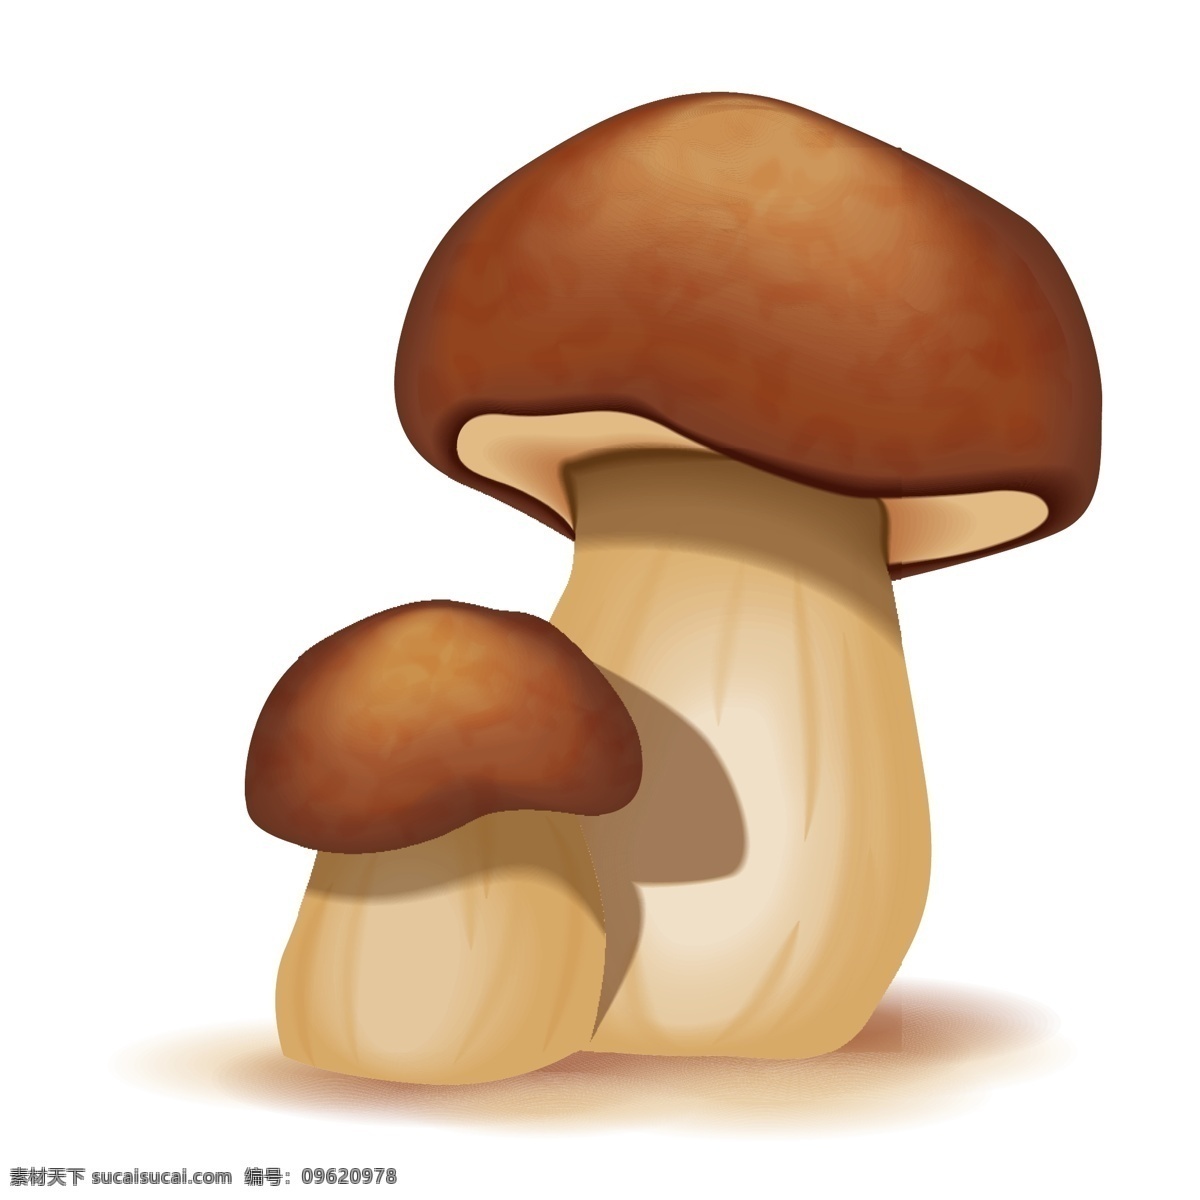 卡通蘑菇矢量 卡通 绘画 蘑菇 蘑菇设计 矢量蘑菇 蘑菇素材 食物蔬菜 蔬菜 水果 生物世界 矢量素材 白色